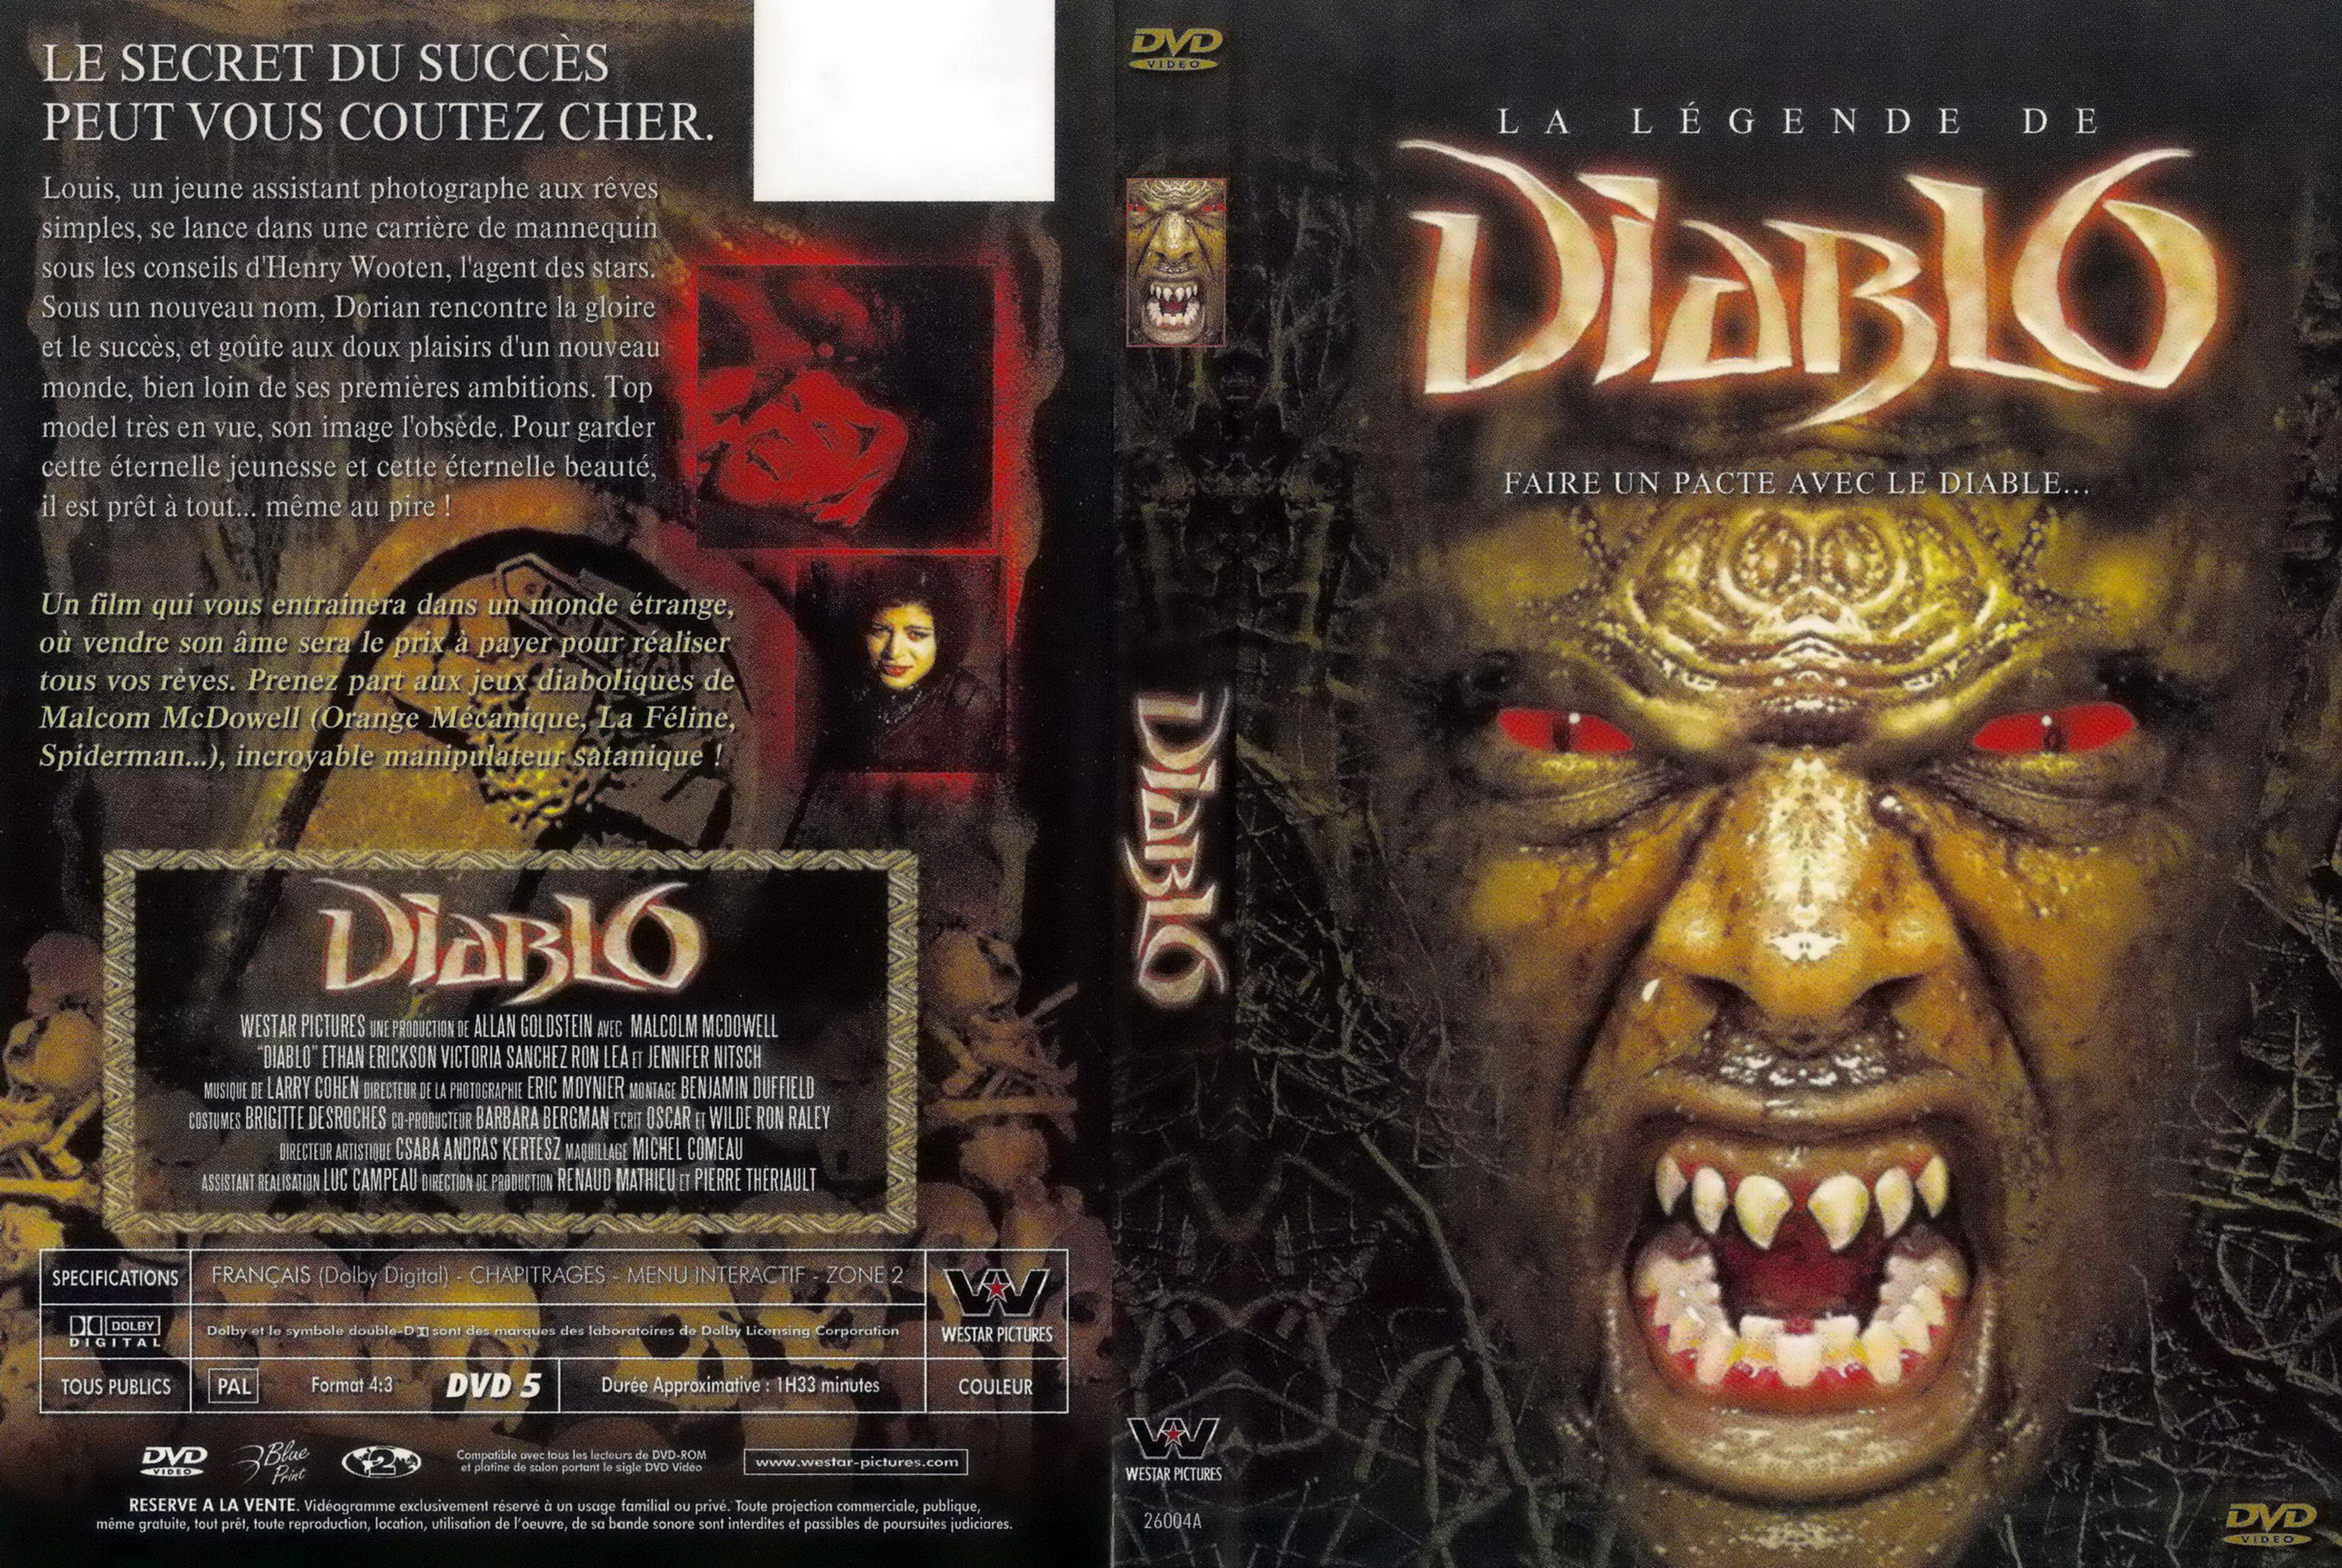 Jaquette DVD Diablo